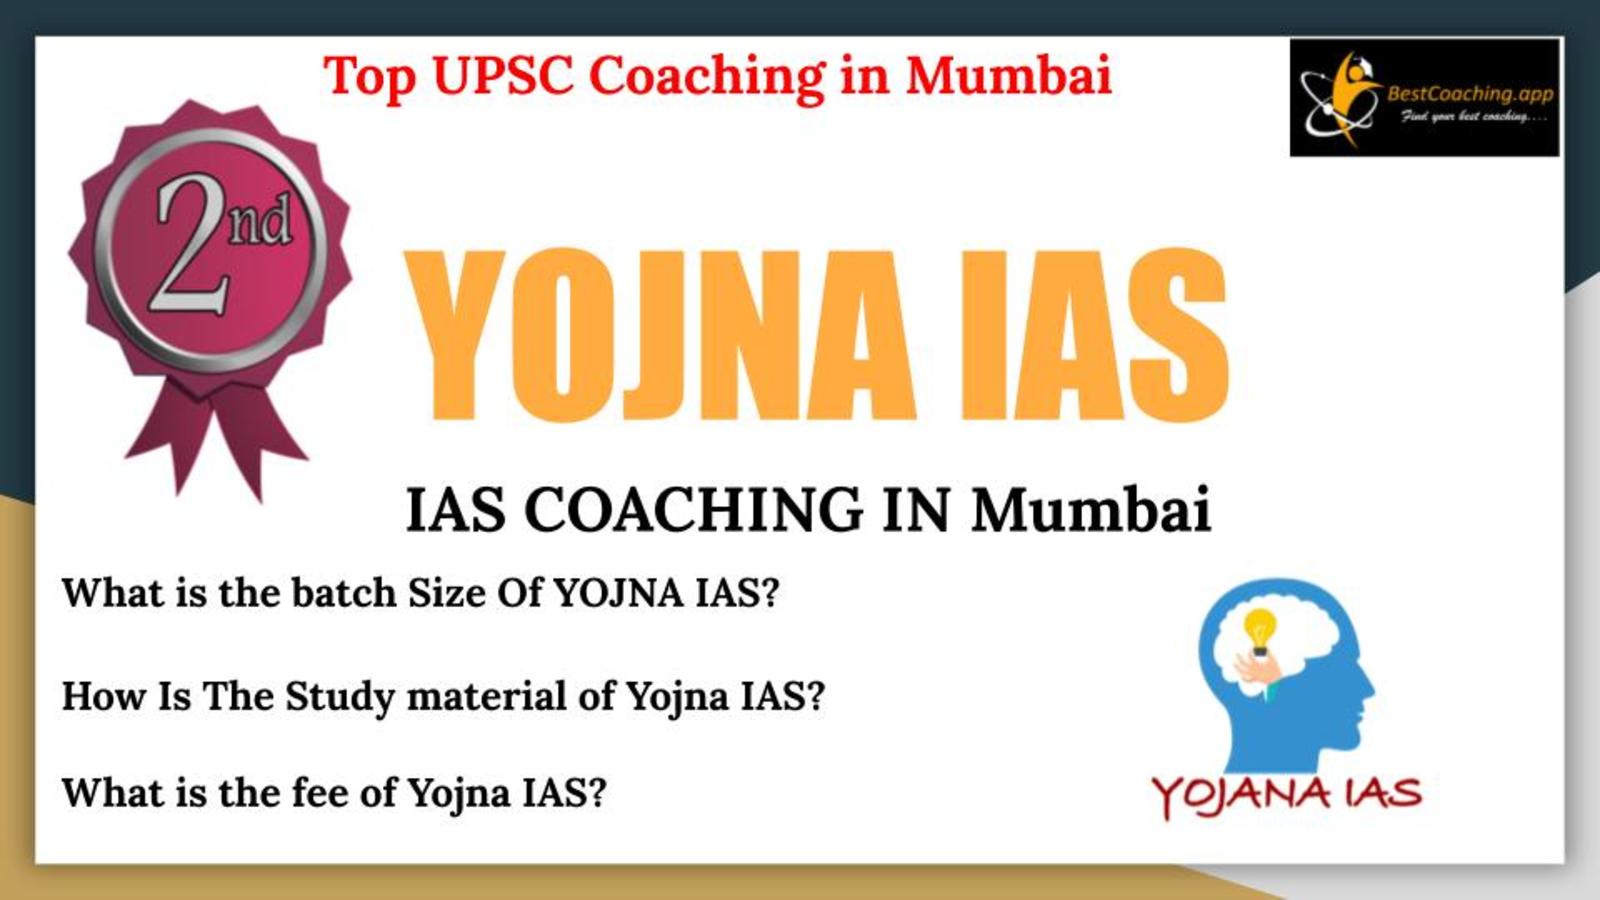 Yojna IAS Coaching In Mumbai. 2nd Top IAS Coaching in Mumbai